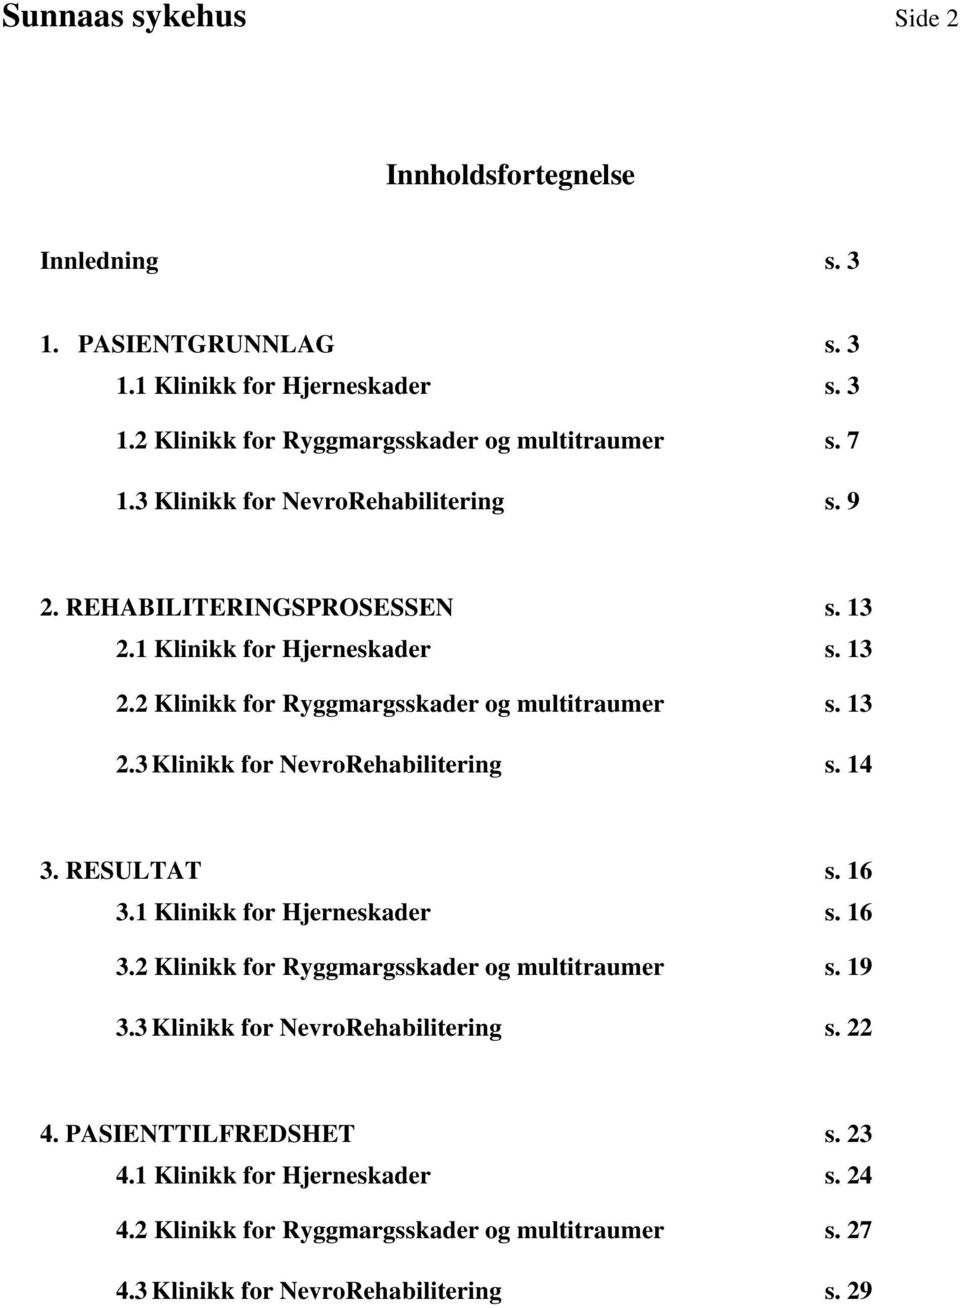 RESULTAT s. 16 3.1 Klinikk for Hjerneskader s. 16 3.2 Klinikk for Ryggmargsskader og multitraumer s. 19 3.3 Klinikk for NevroRehabilitering s. 22 4. PASIENTTILFREDSHET s.